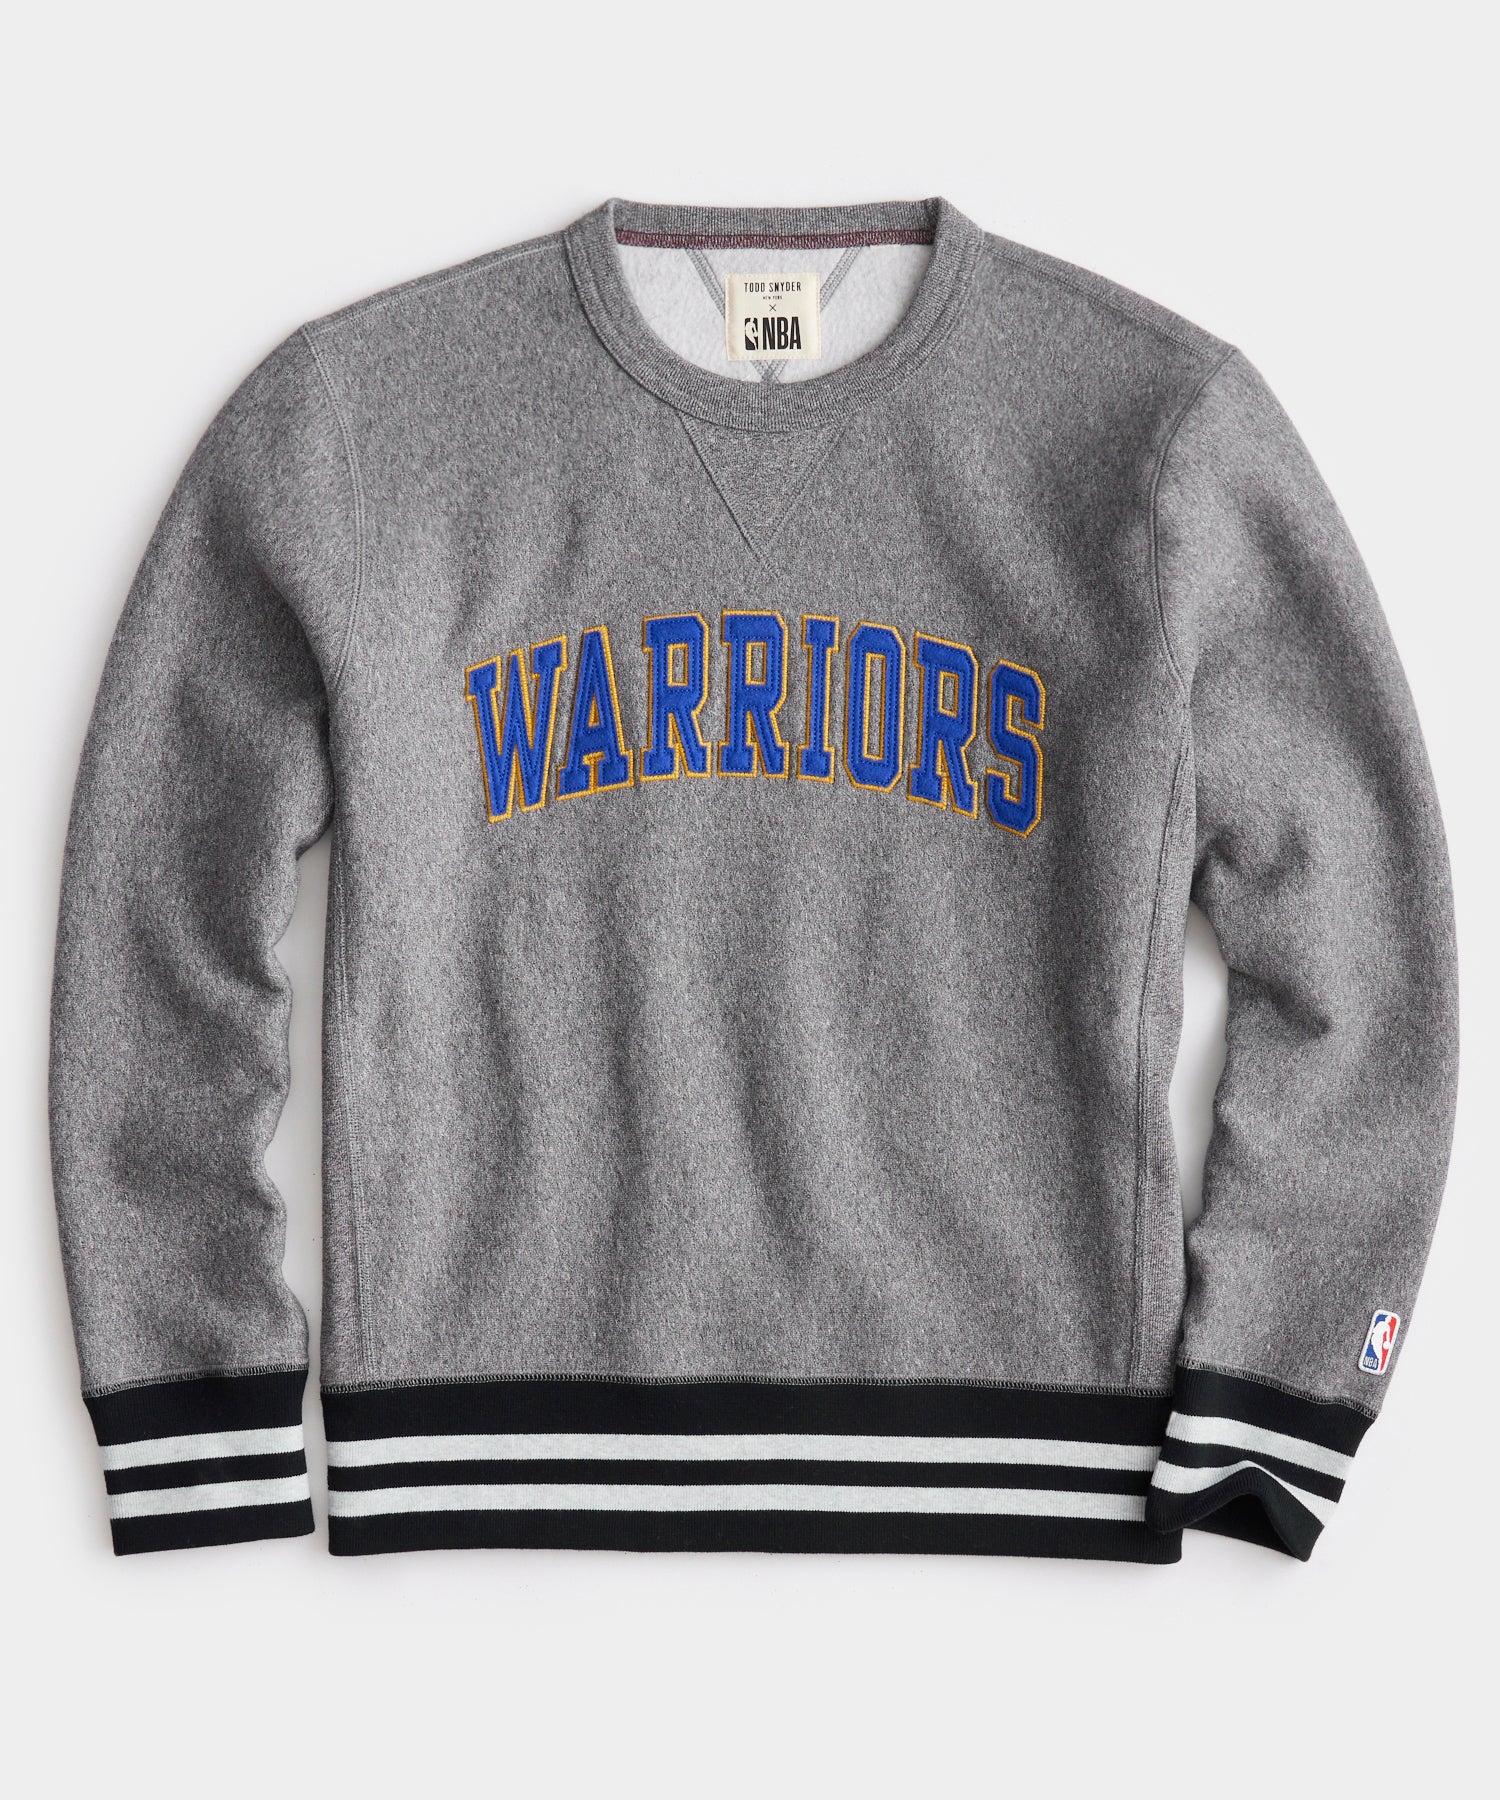 Cheap Golden State Warriors Apparel, Discount Warriors Gear, NBA